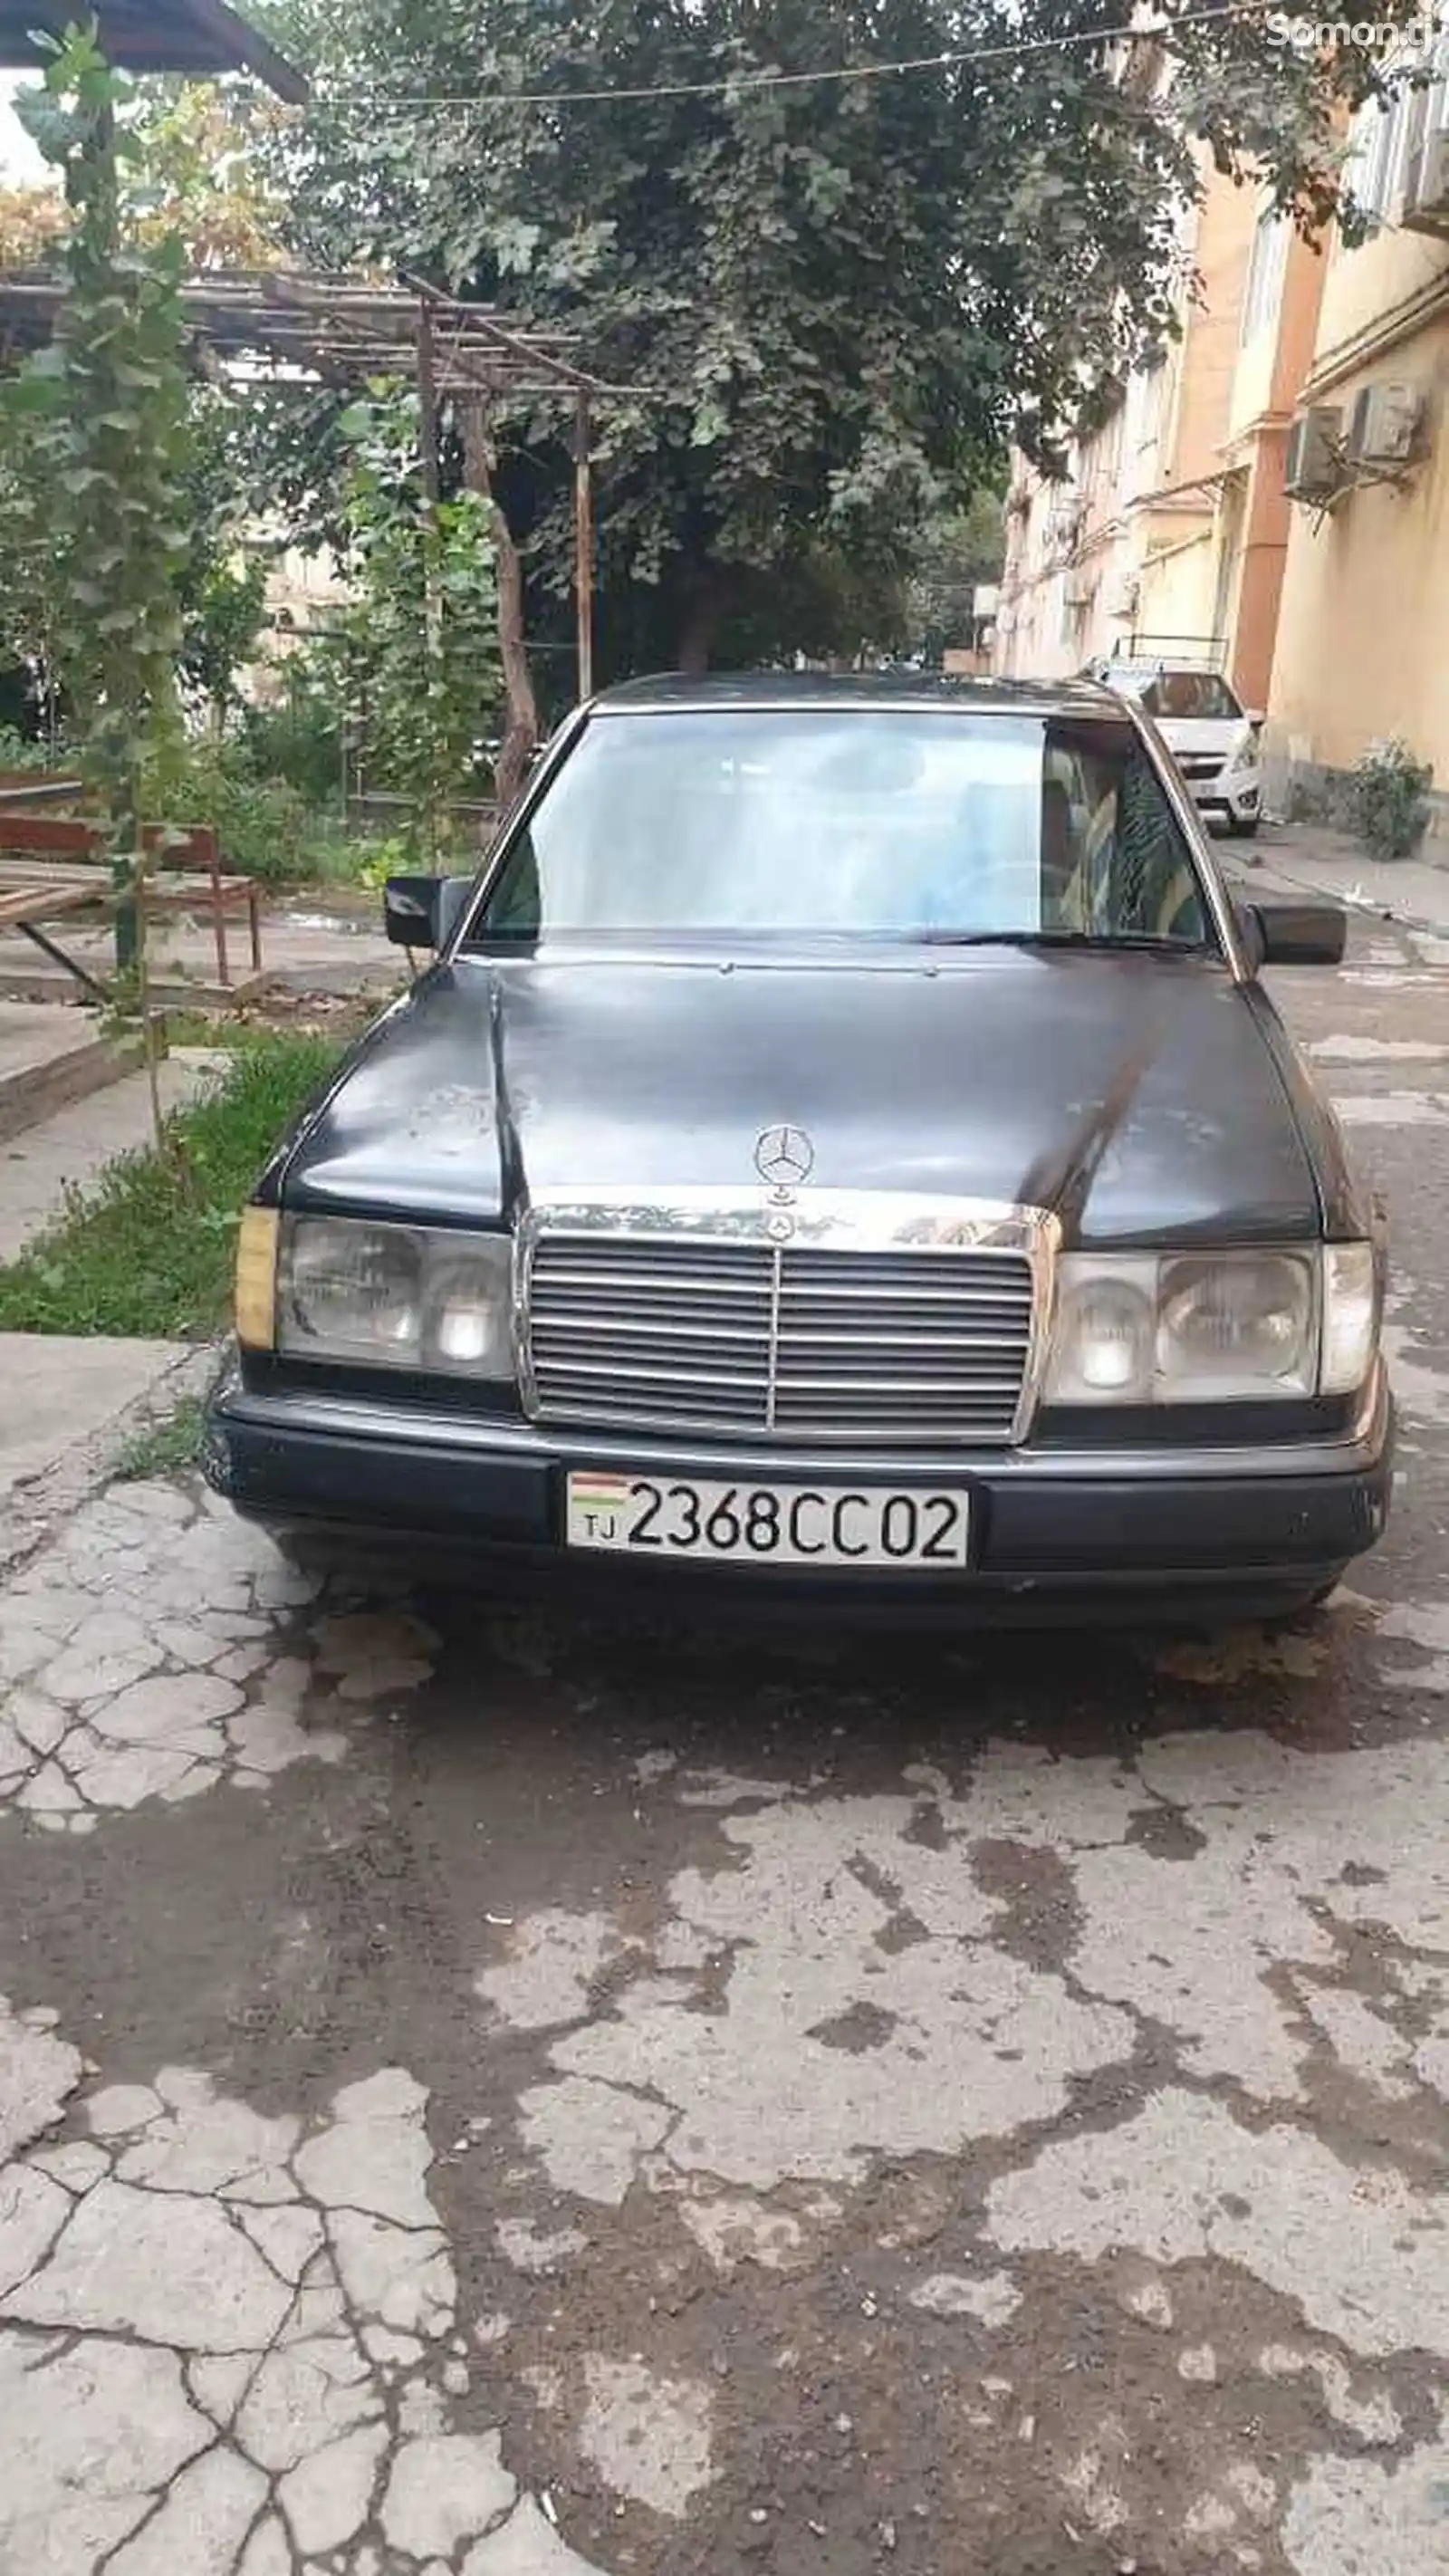 Mercedes-Benz W124, 1991-1